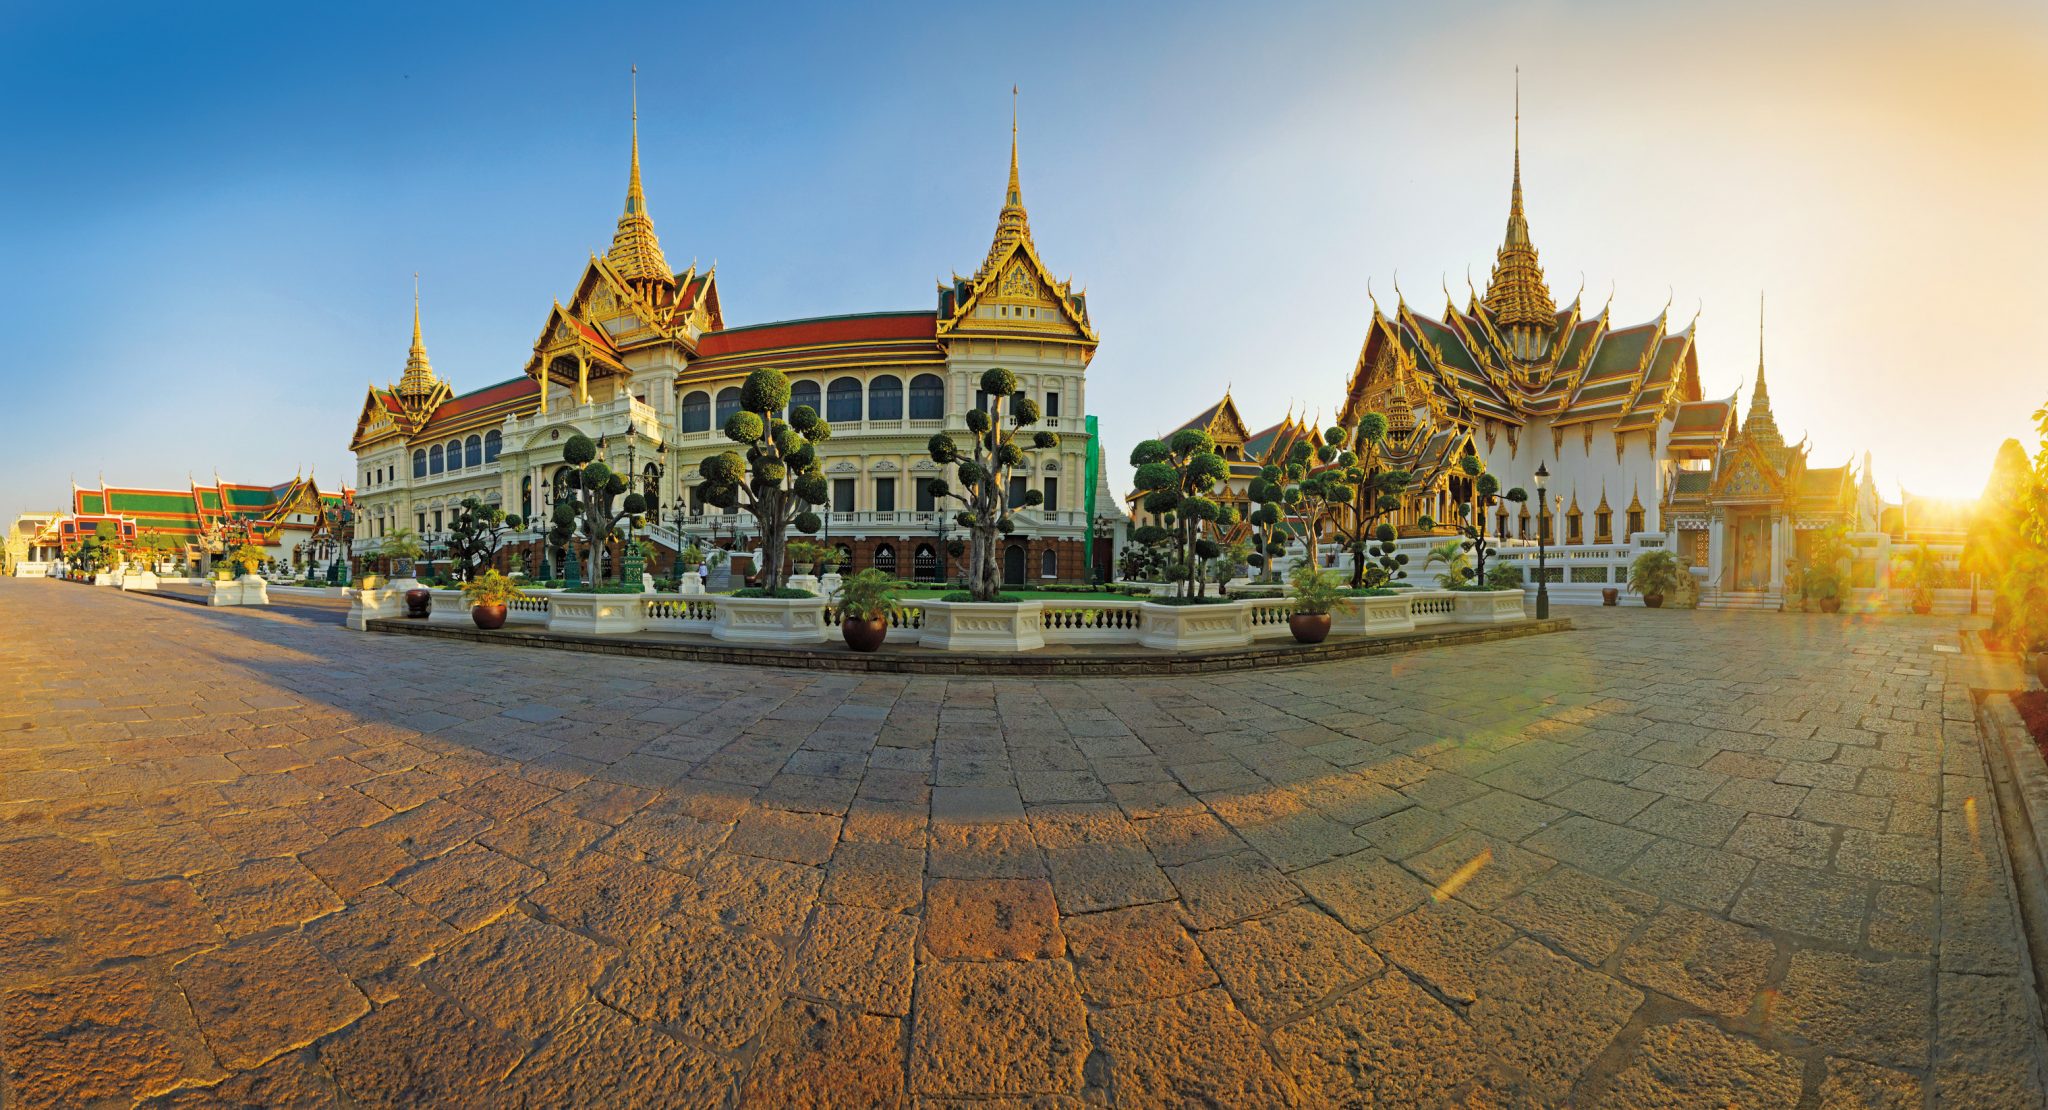 Thailand-Bangkok-Grand-Palace